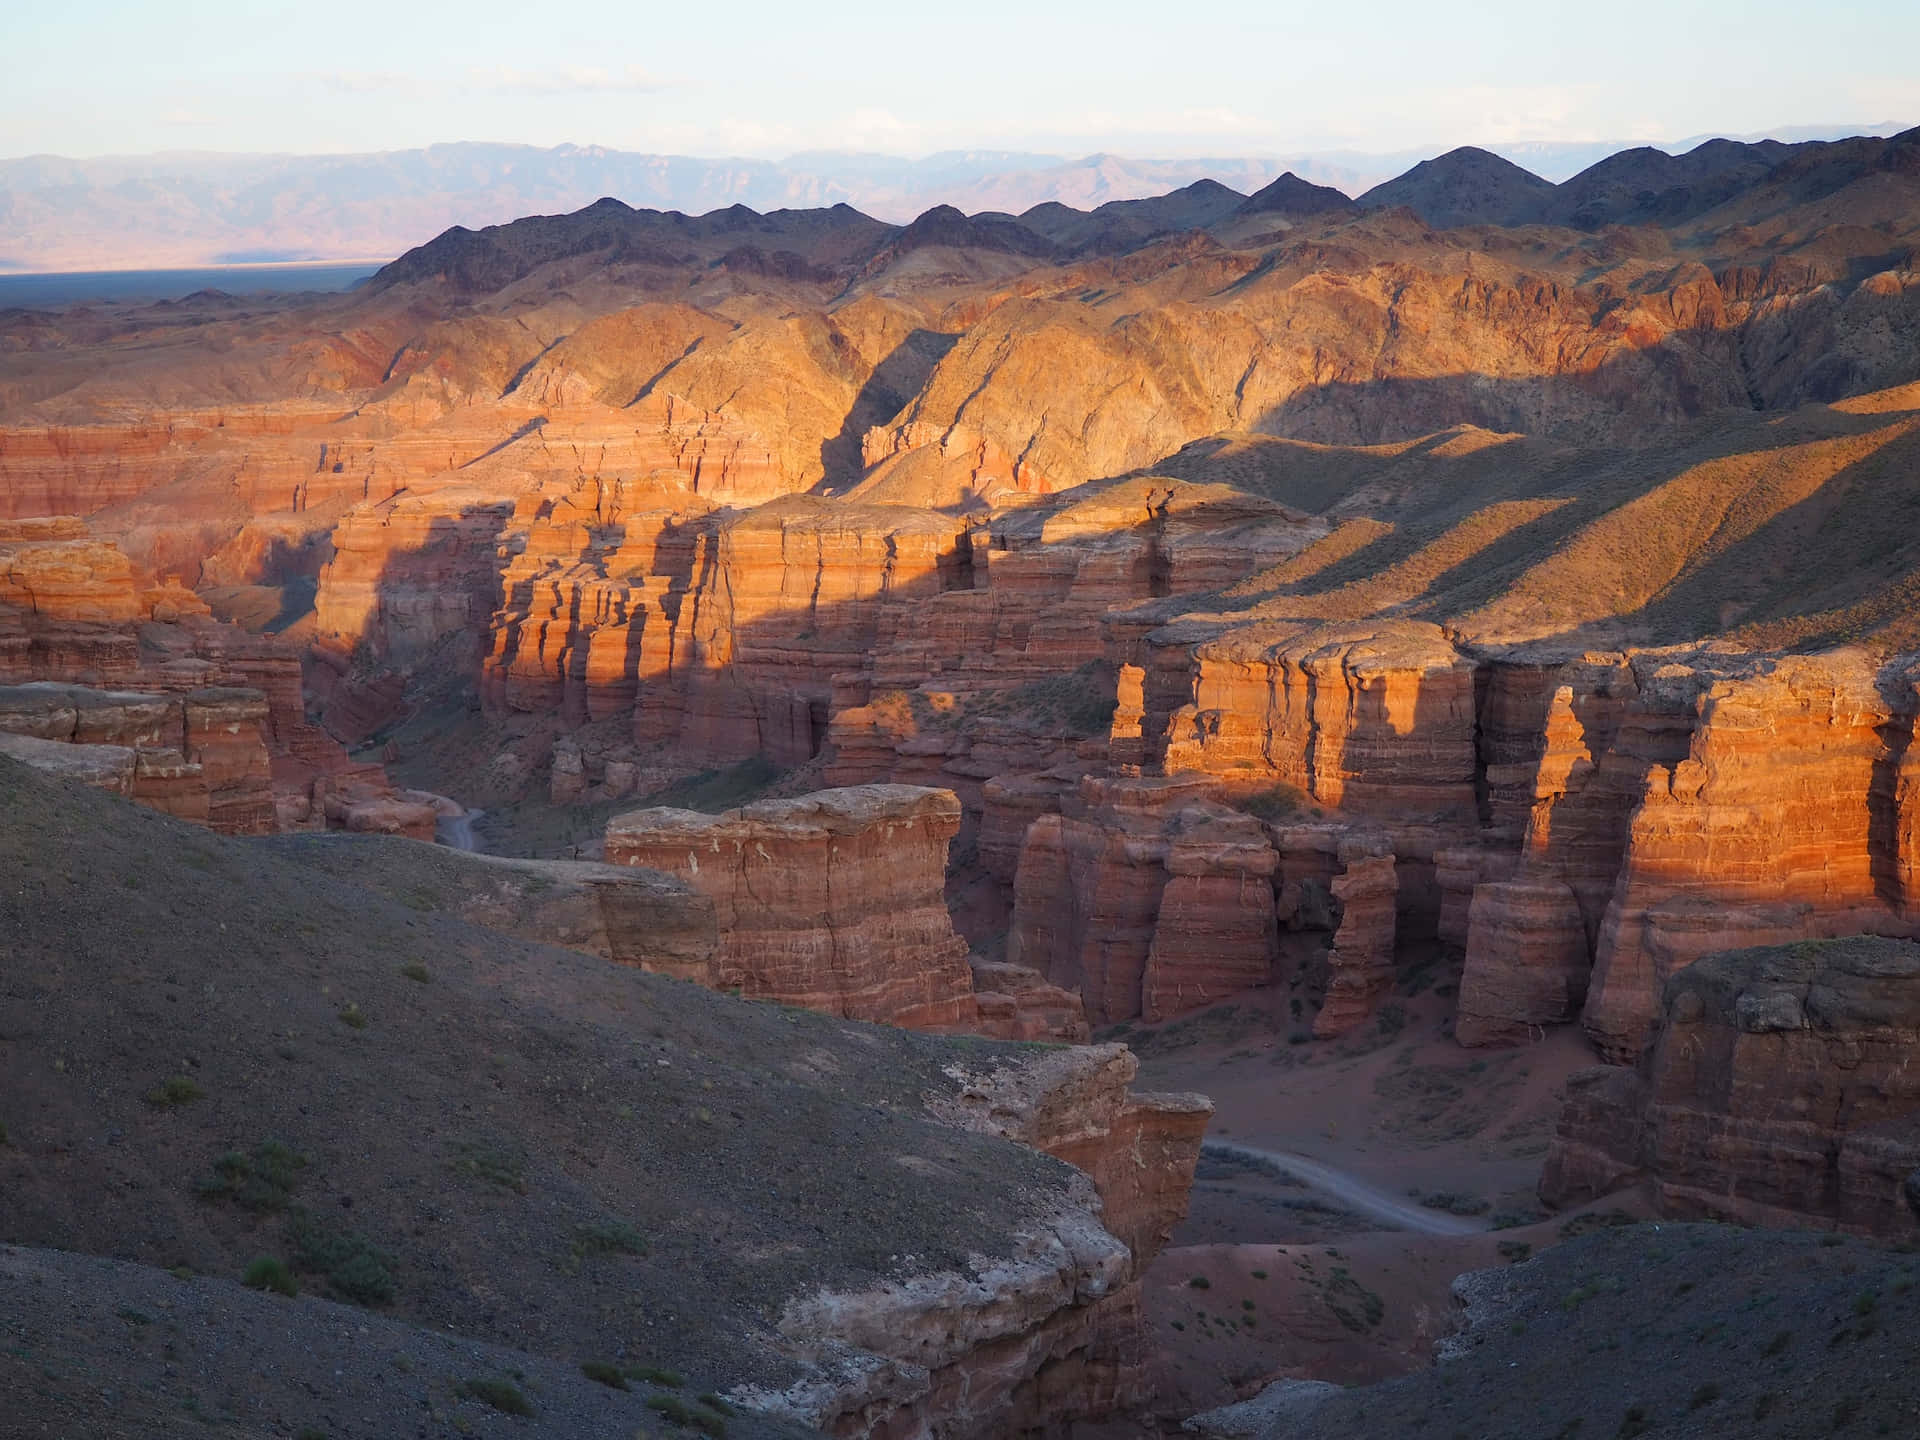 Migliorsfondo Naturale Del Canyon Di Charyn In Kazakhstan.